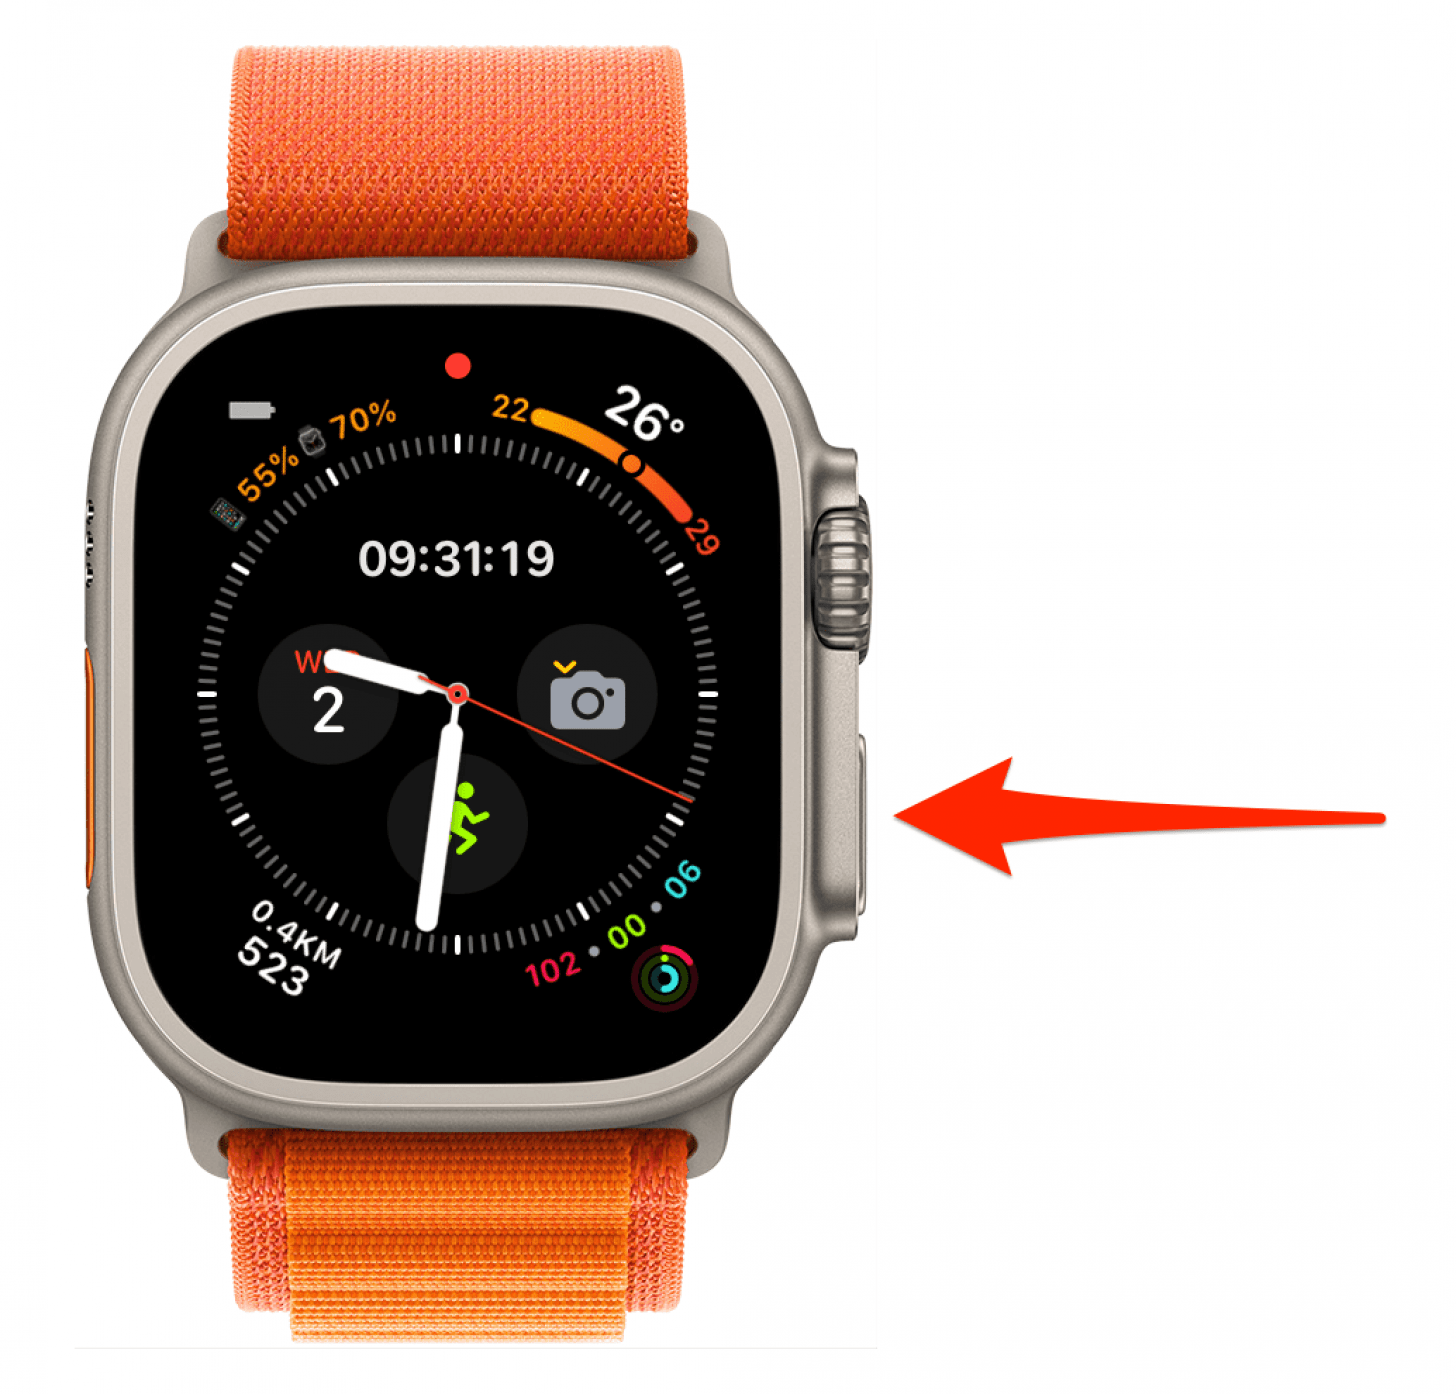 Setzen Sie Ihre Apple Watch zurück, indem Sie die Seitentaste gedrückt halten, bis das Menü mit der Aus-Taste erscheint.